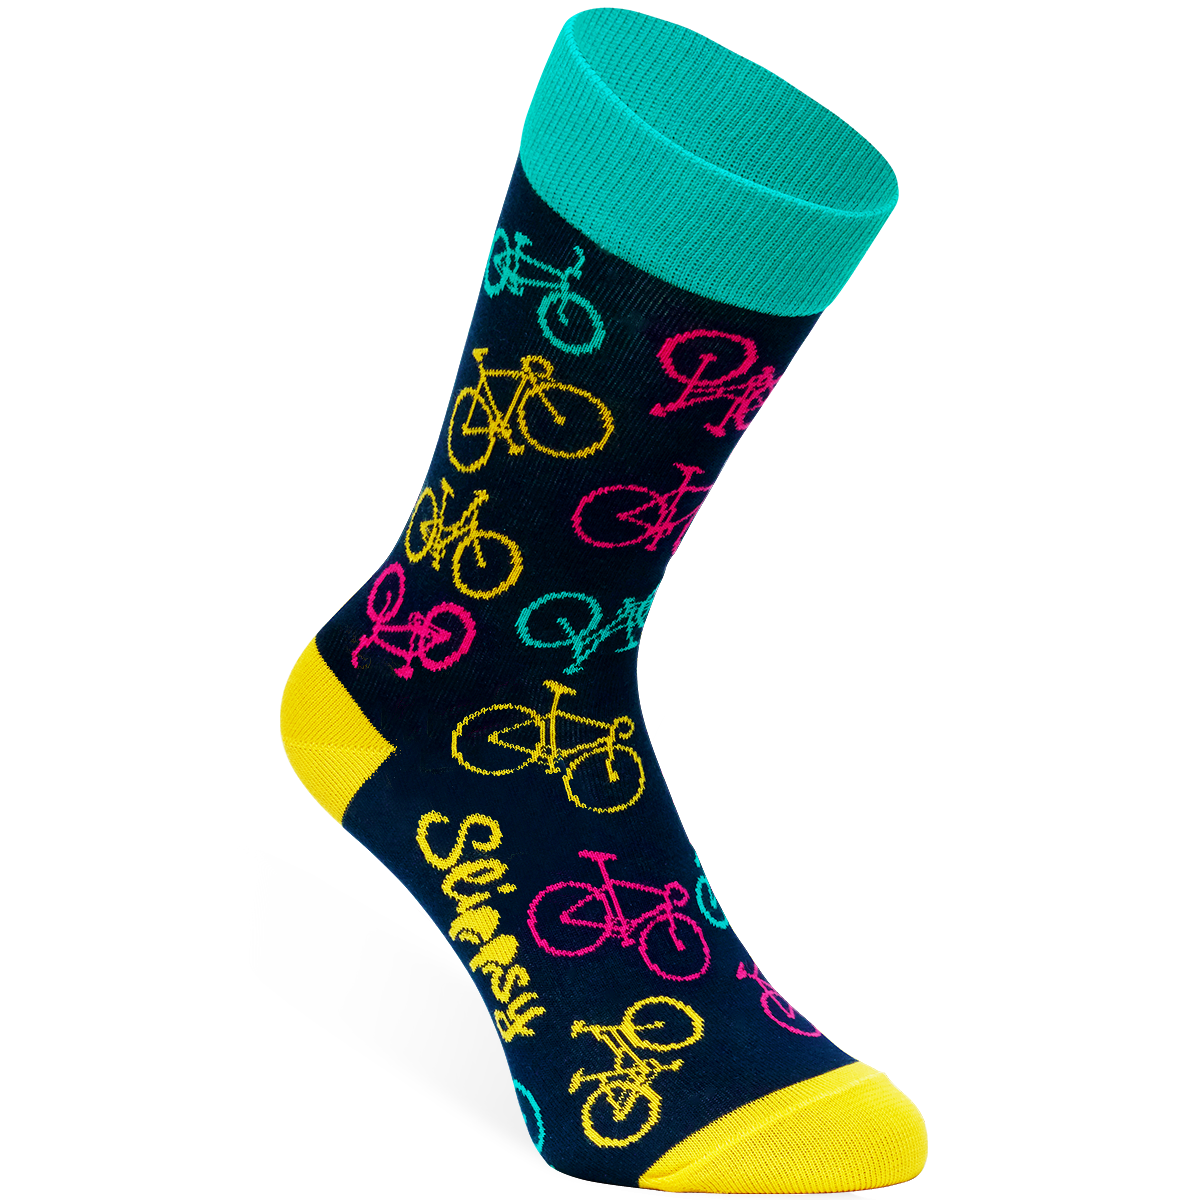 E-shop Slippsy Bike socks/43-46